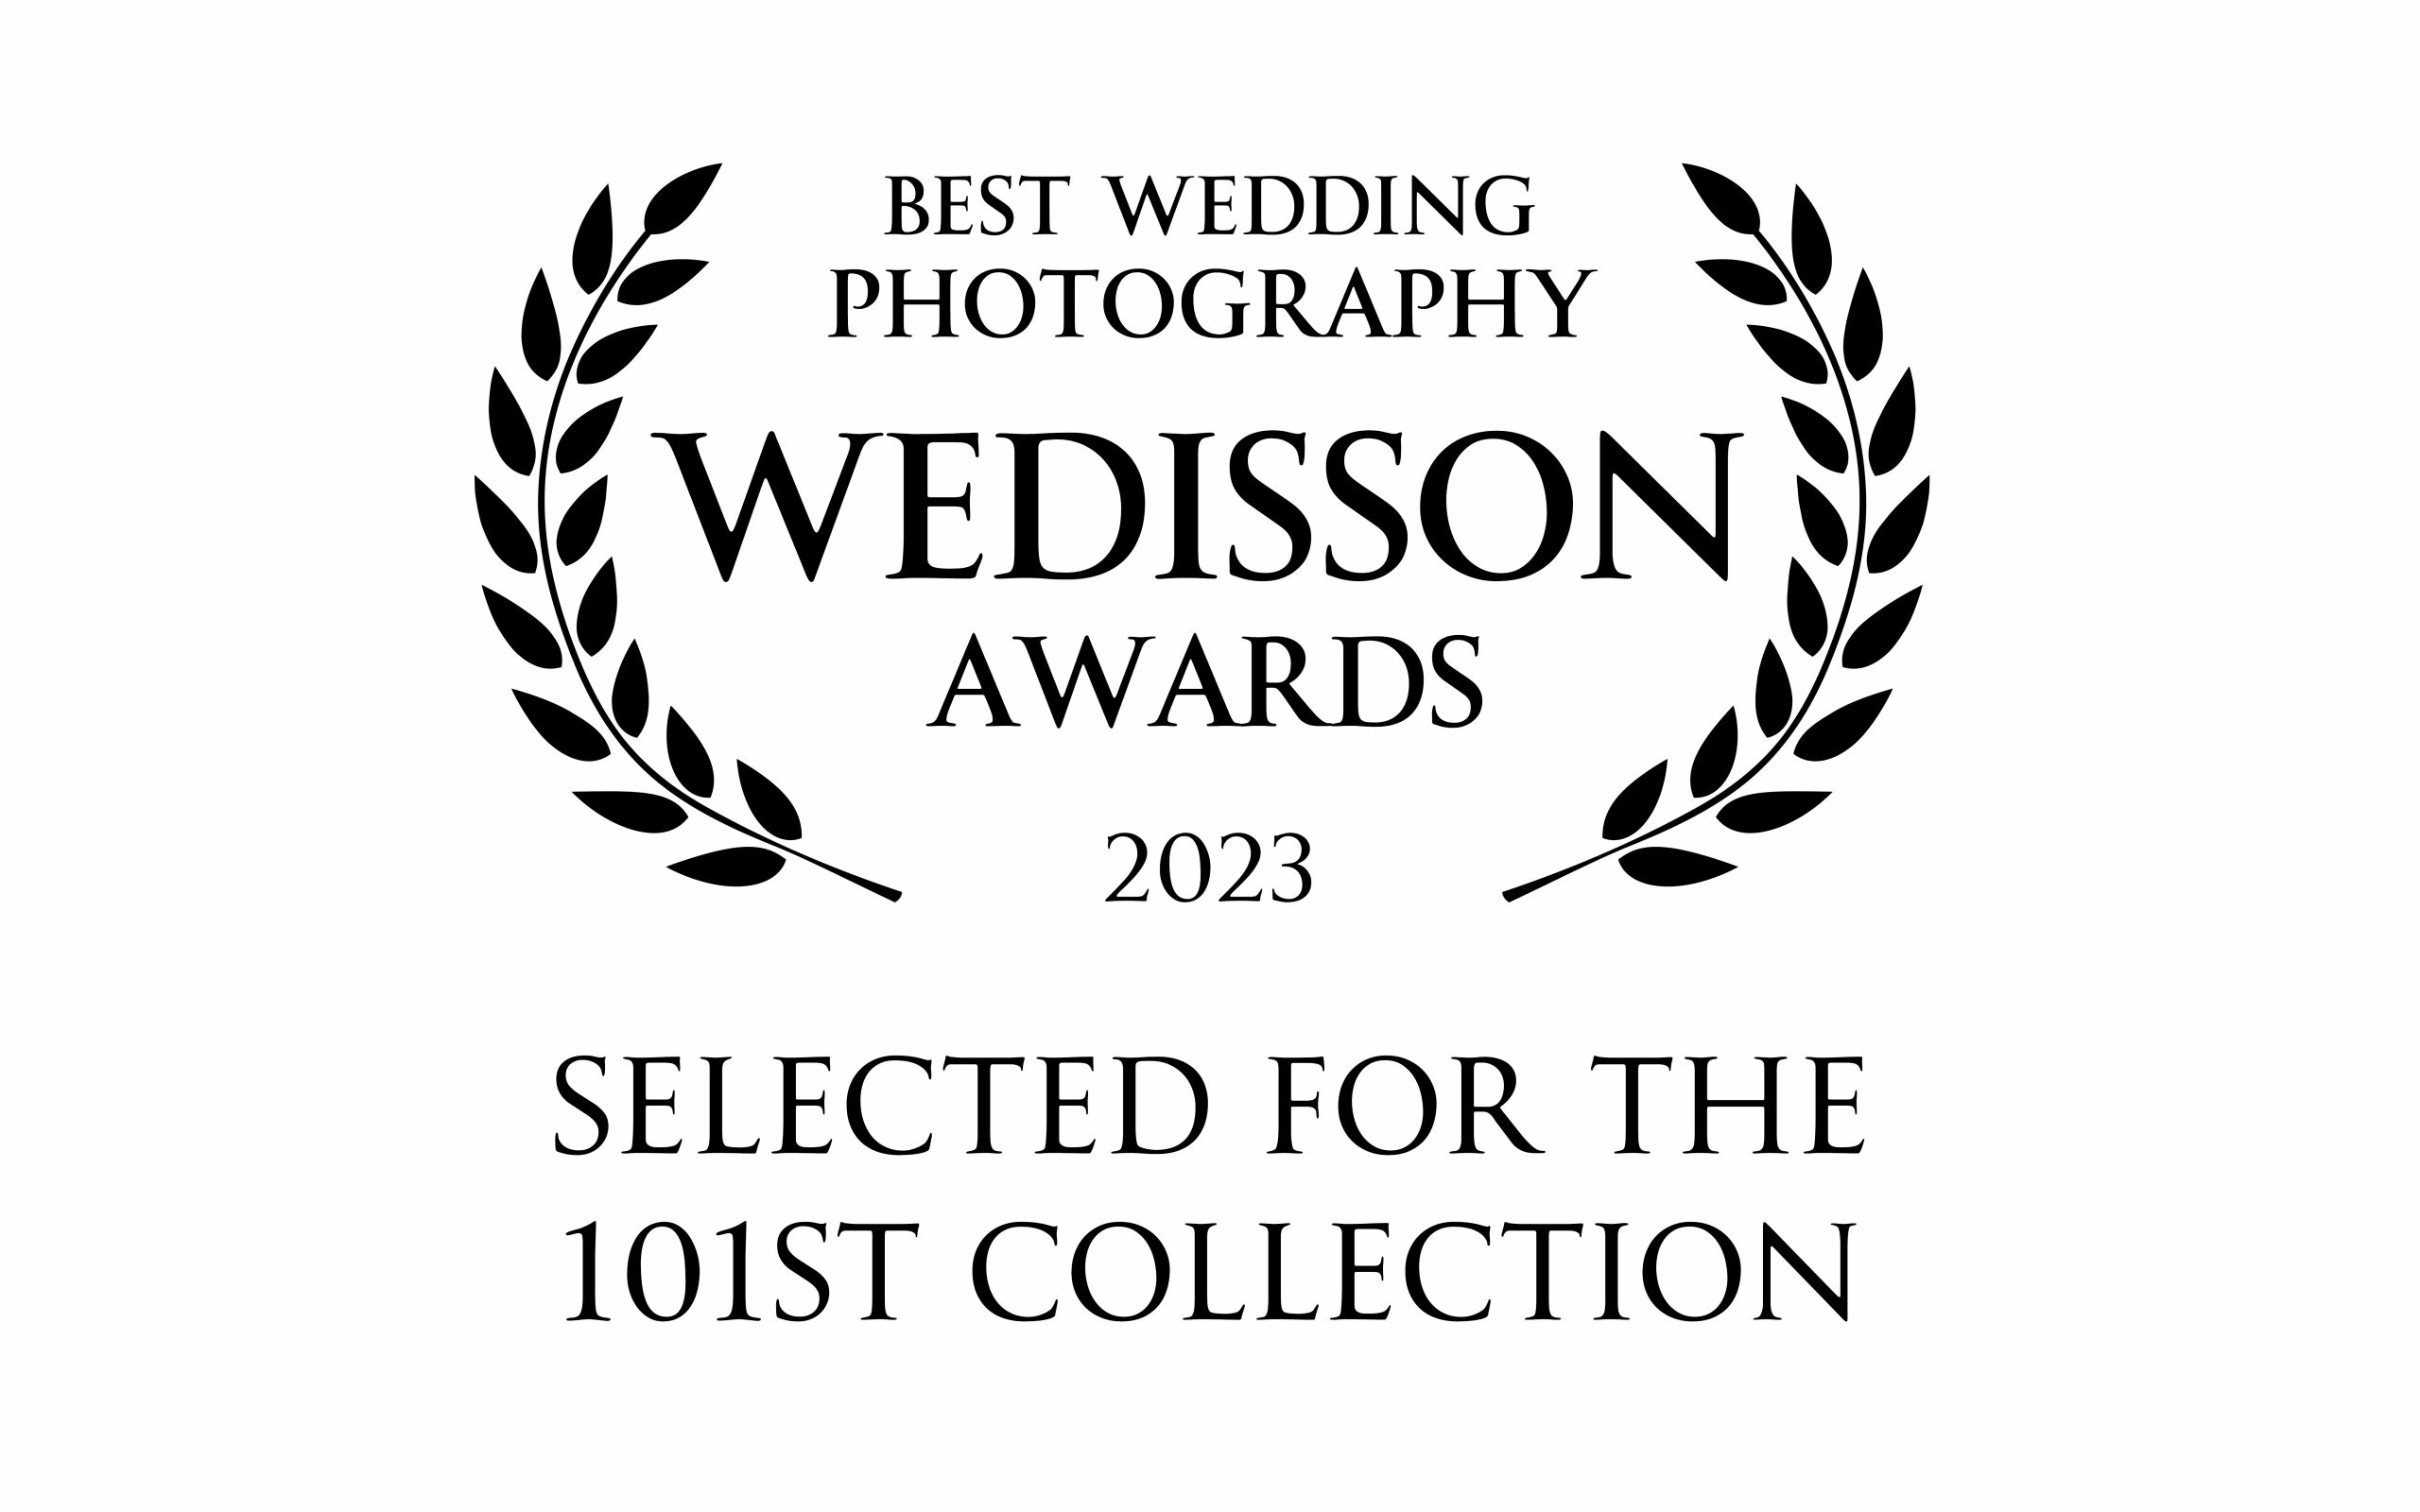 Wedisson Award 101th